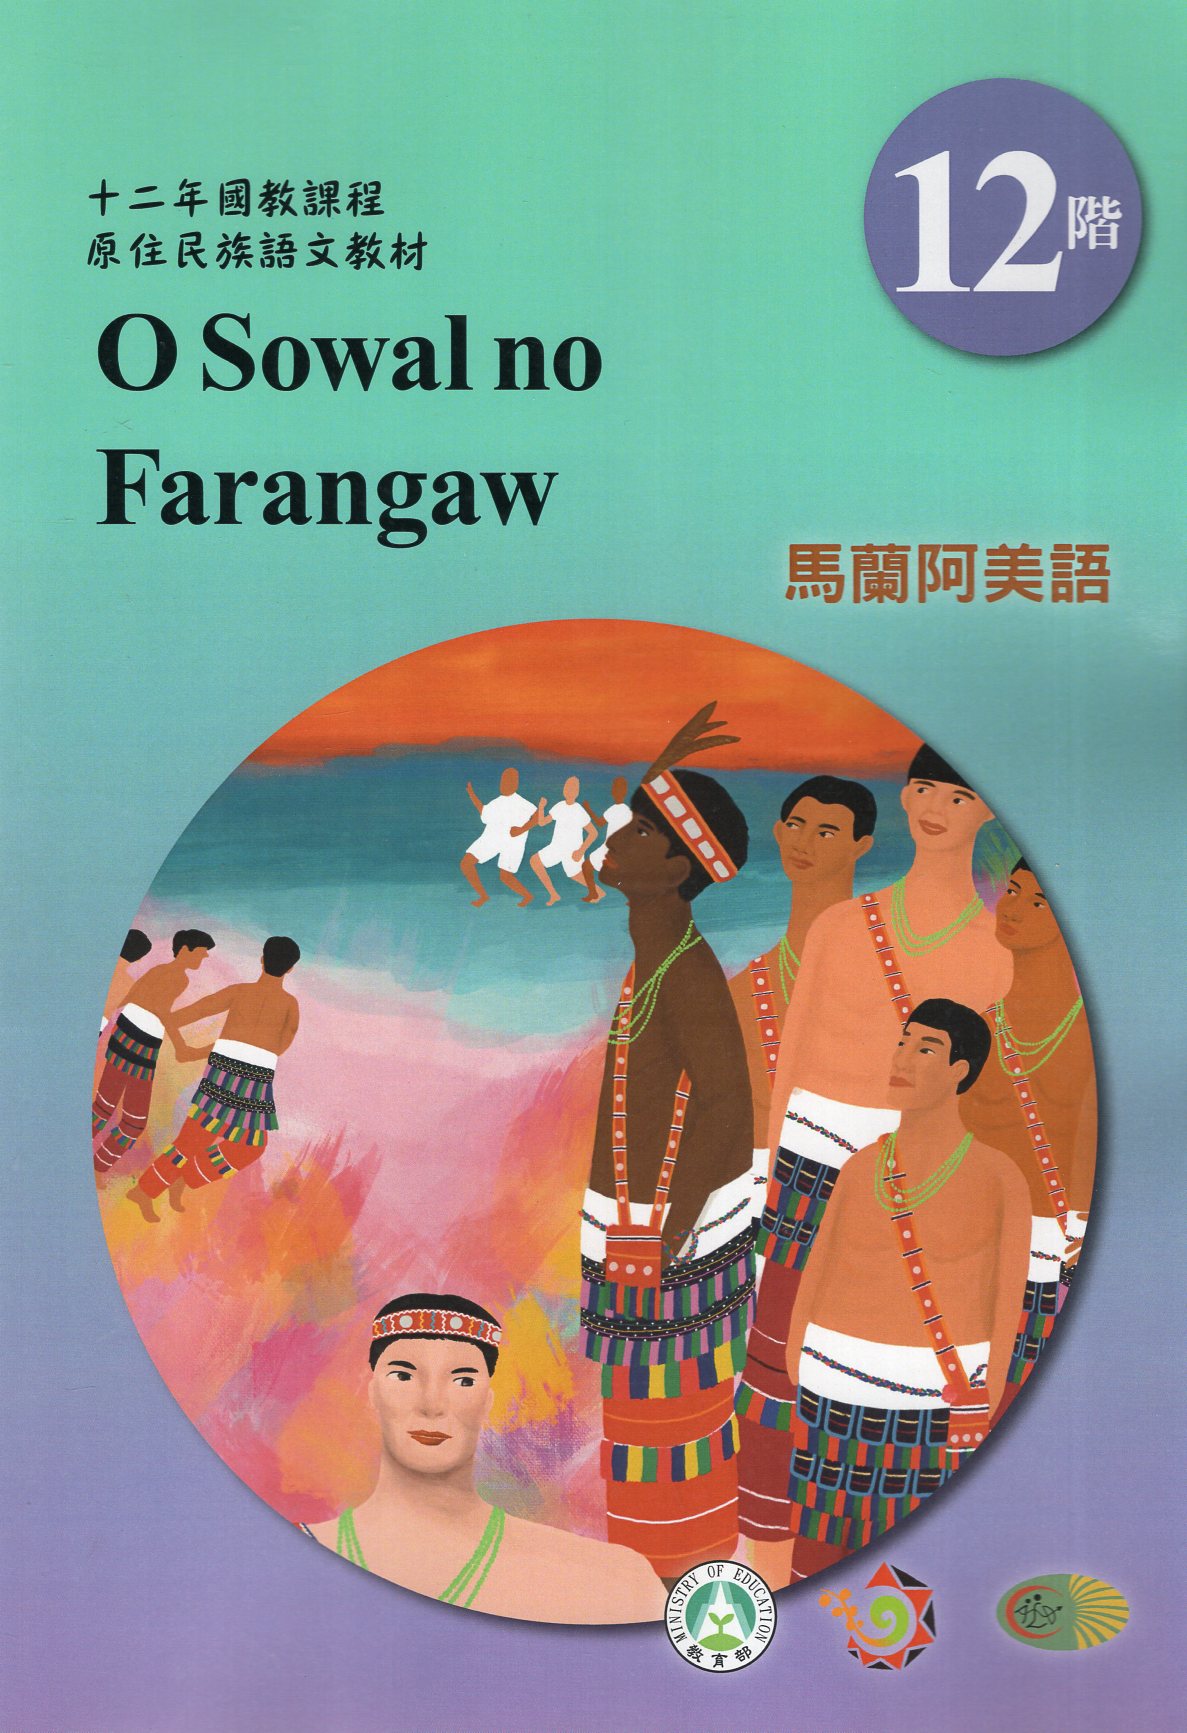 十二年國教原住民族語文教材 馬蘭阿美語 學習手冊 第12階